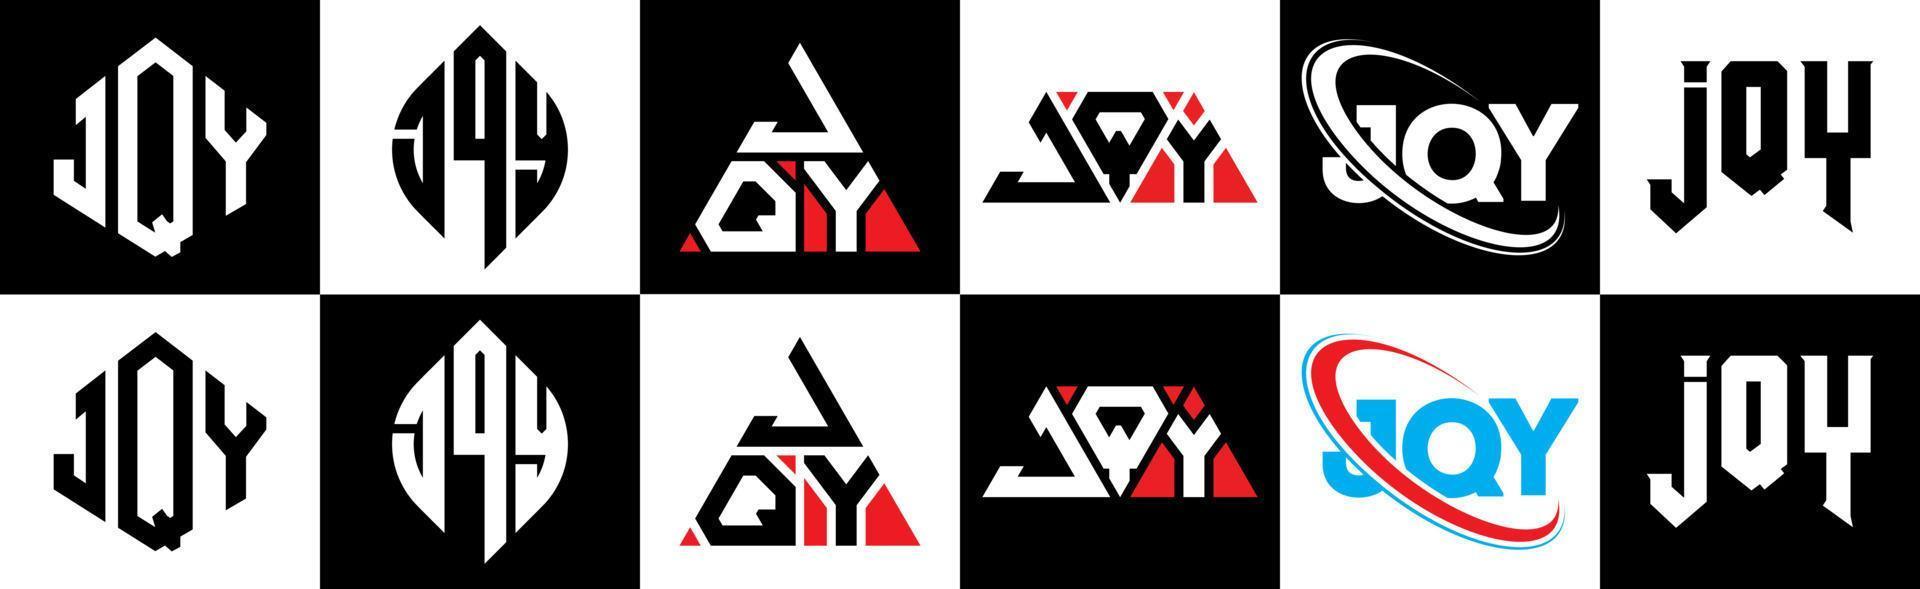 création de logo de lettre jqy en six styles. polygone jqy, cercle, triangle, hexagone, style plat et simple avec logo de lettre de variation de couleur noir et blanc dans un plan de travail. jqy logo minimaliste et classique vecteur